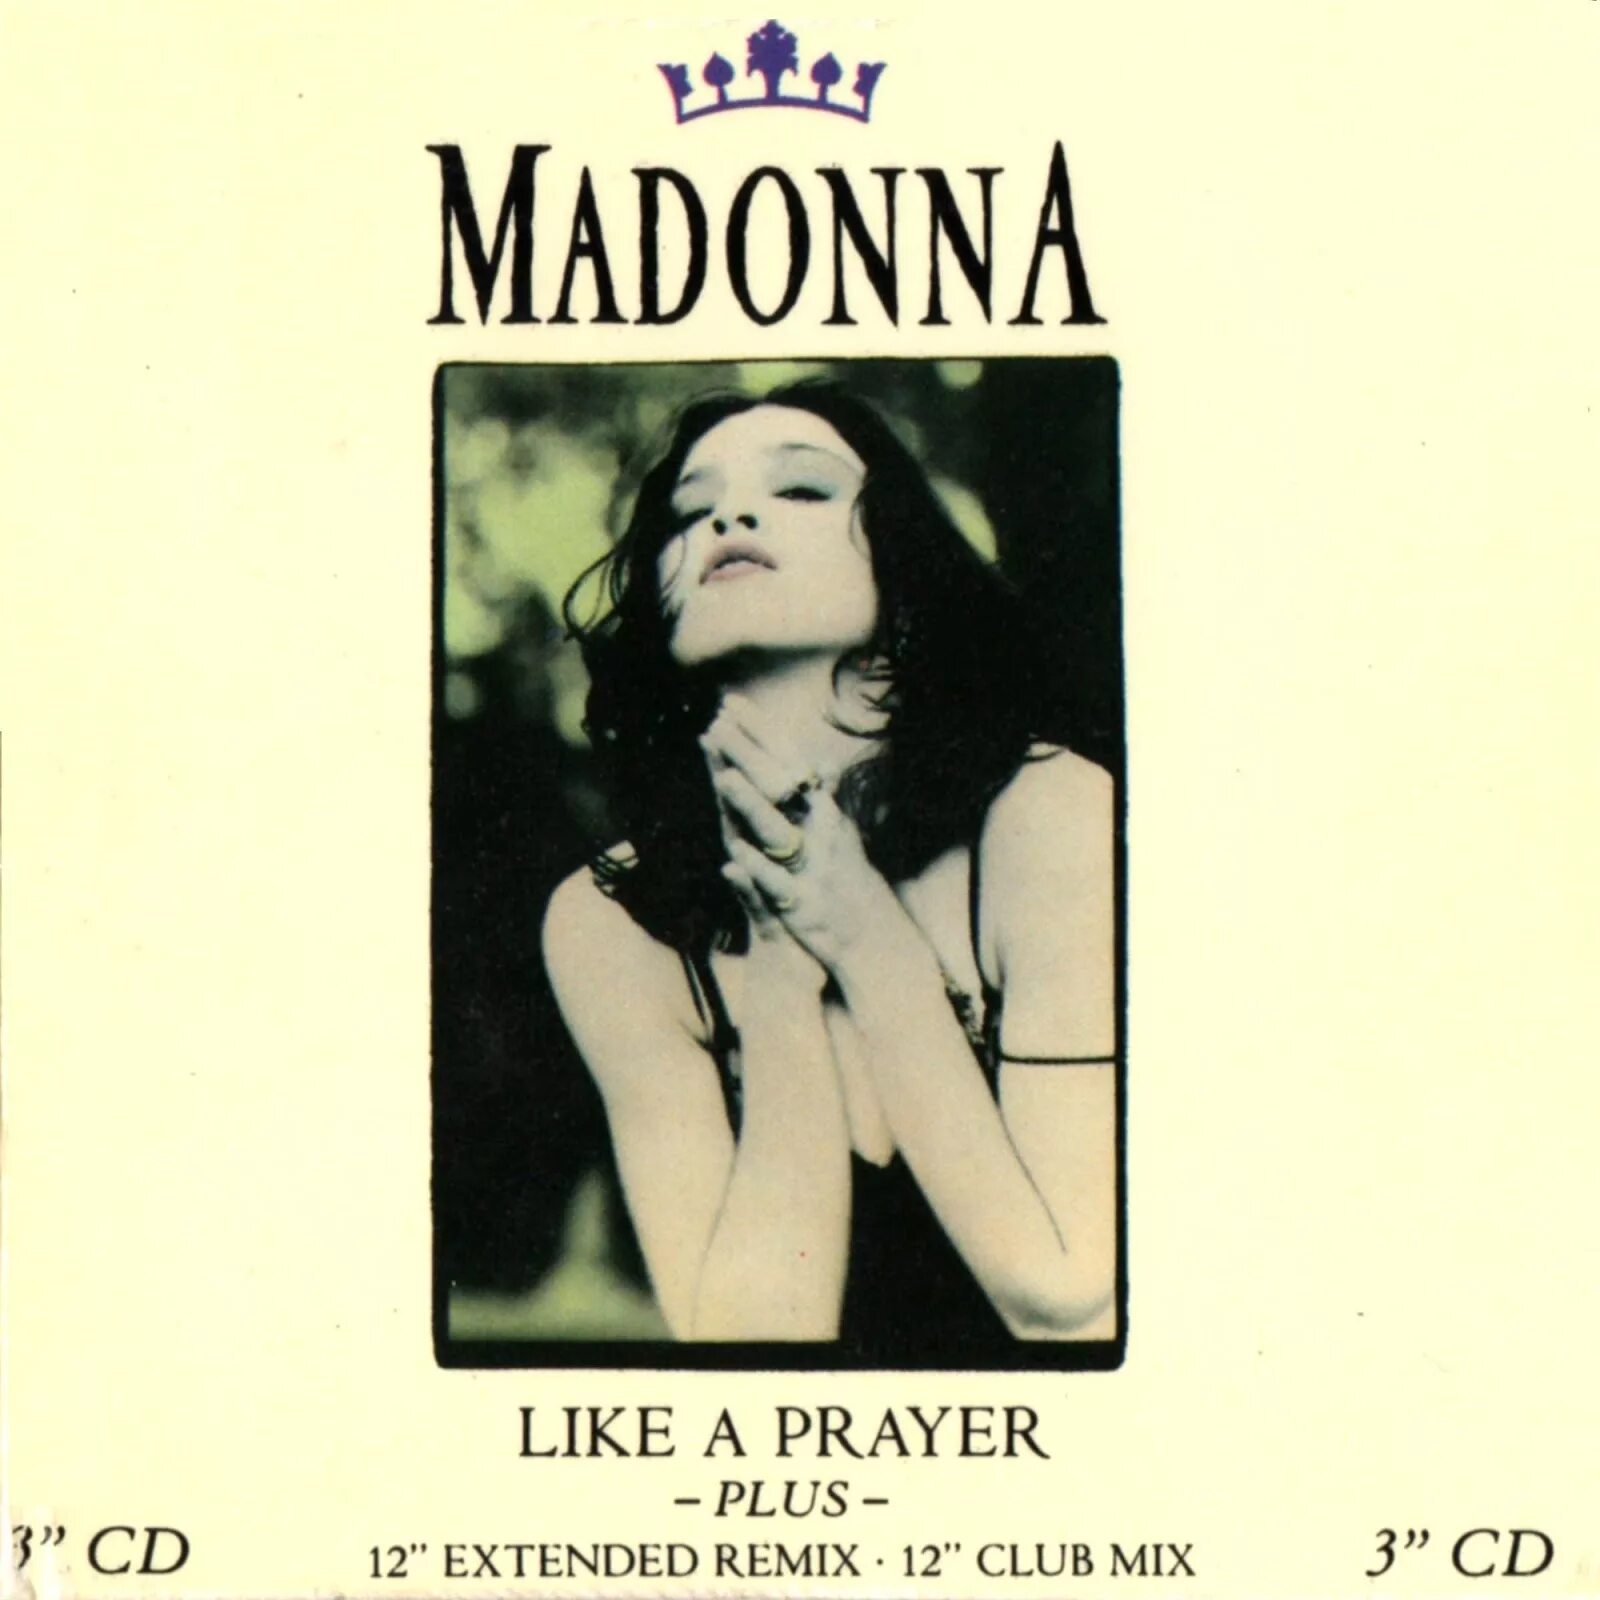 Like madonna песня. Madonna 1989 like a Prayer. CD Madonna: like a Prayer. Madonna like a Prayer album. Madonna like a Prayer винил.